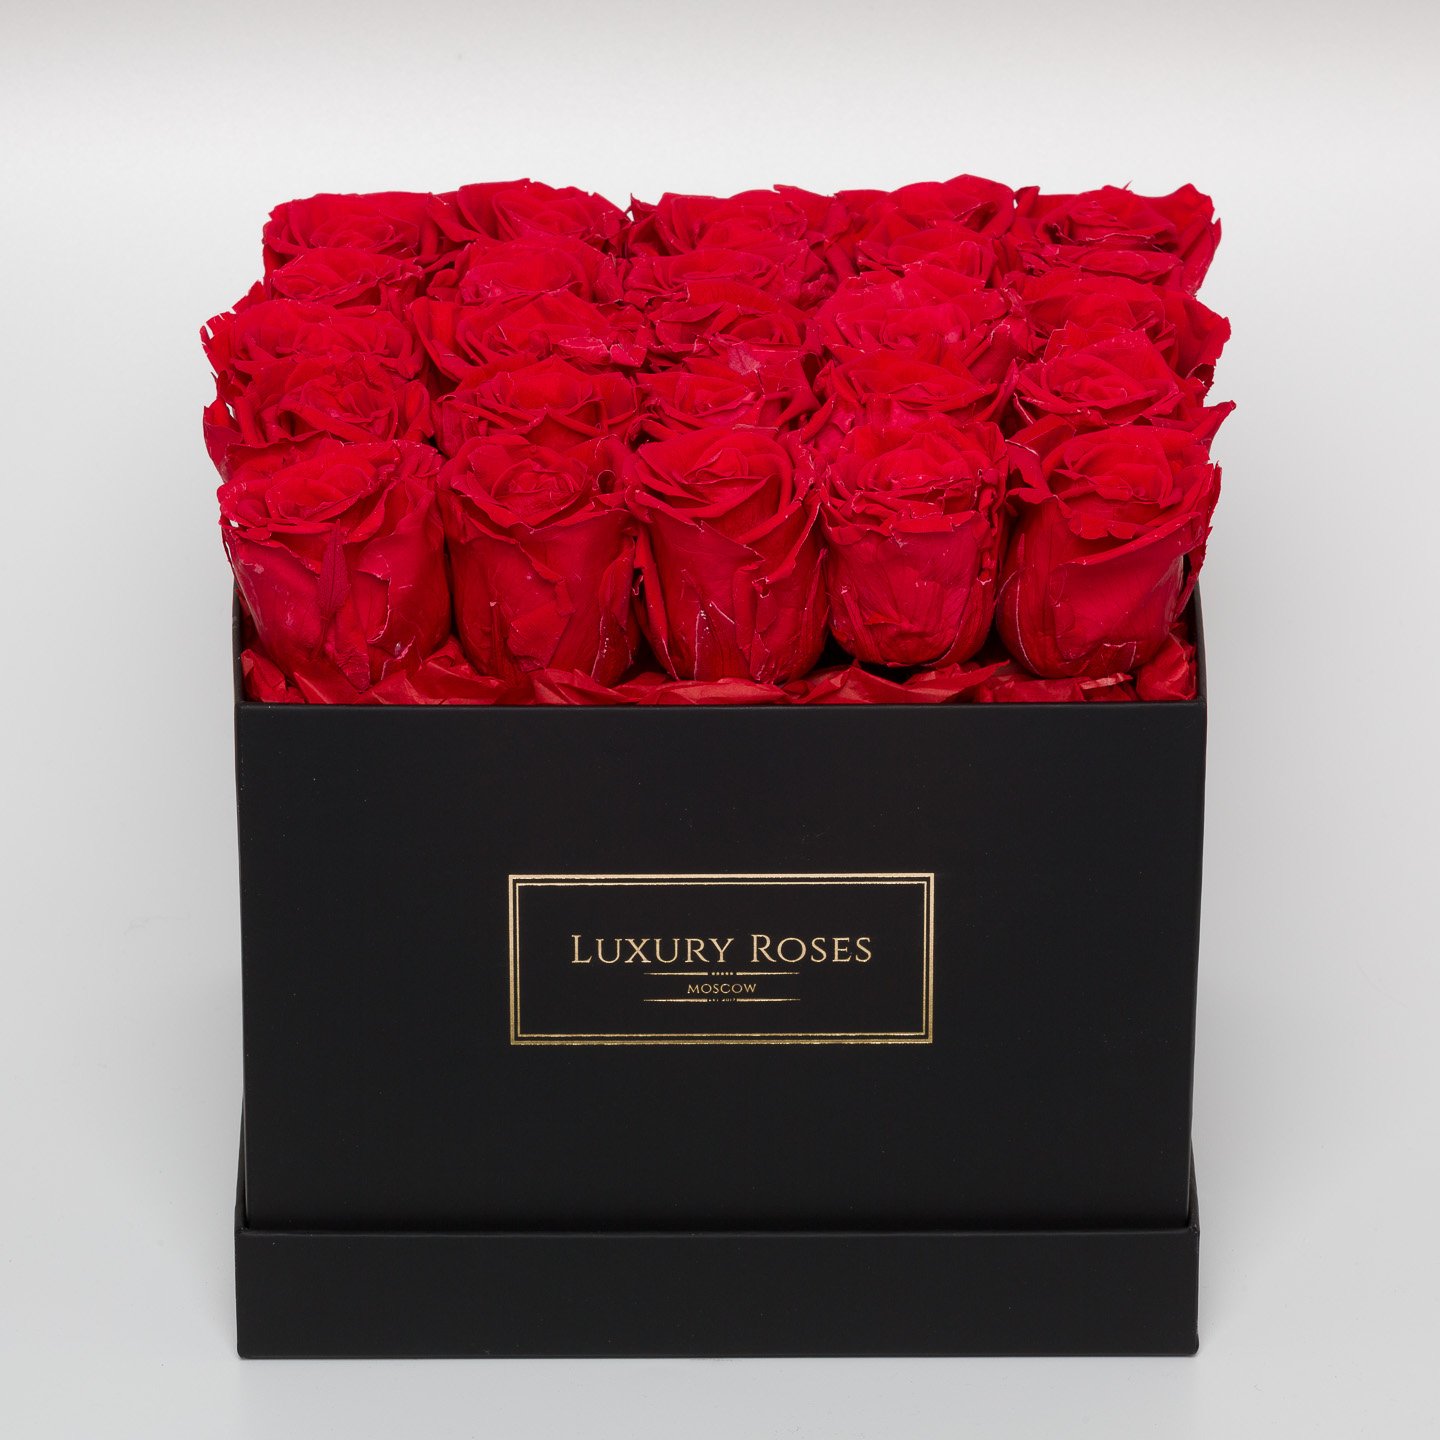 Luxury rose. Черные розы в коробке. Красные розы в черной коробке. Черная коробка с красными розами. Квадратная коробка с розами.